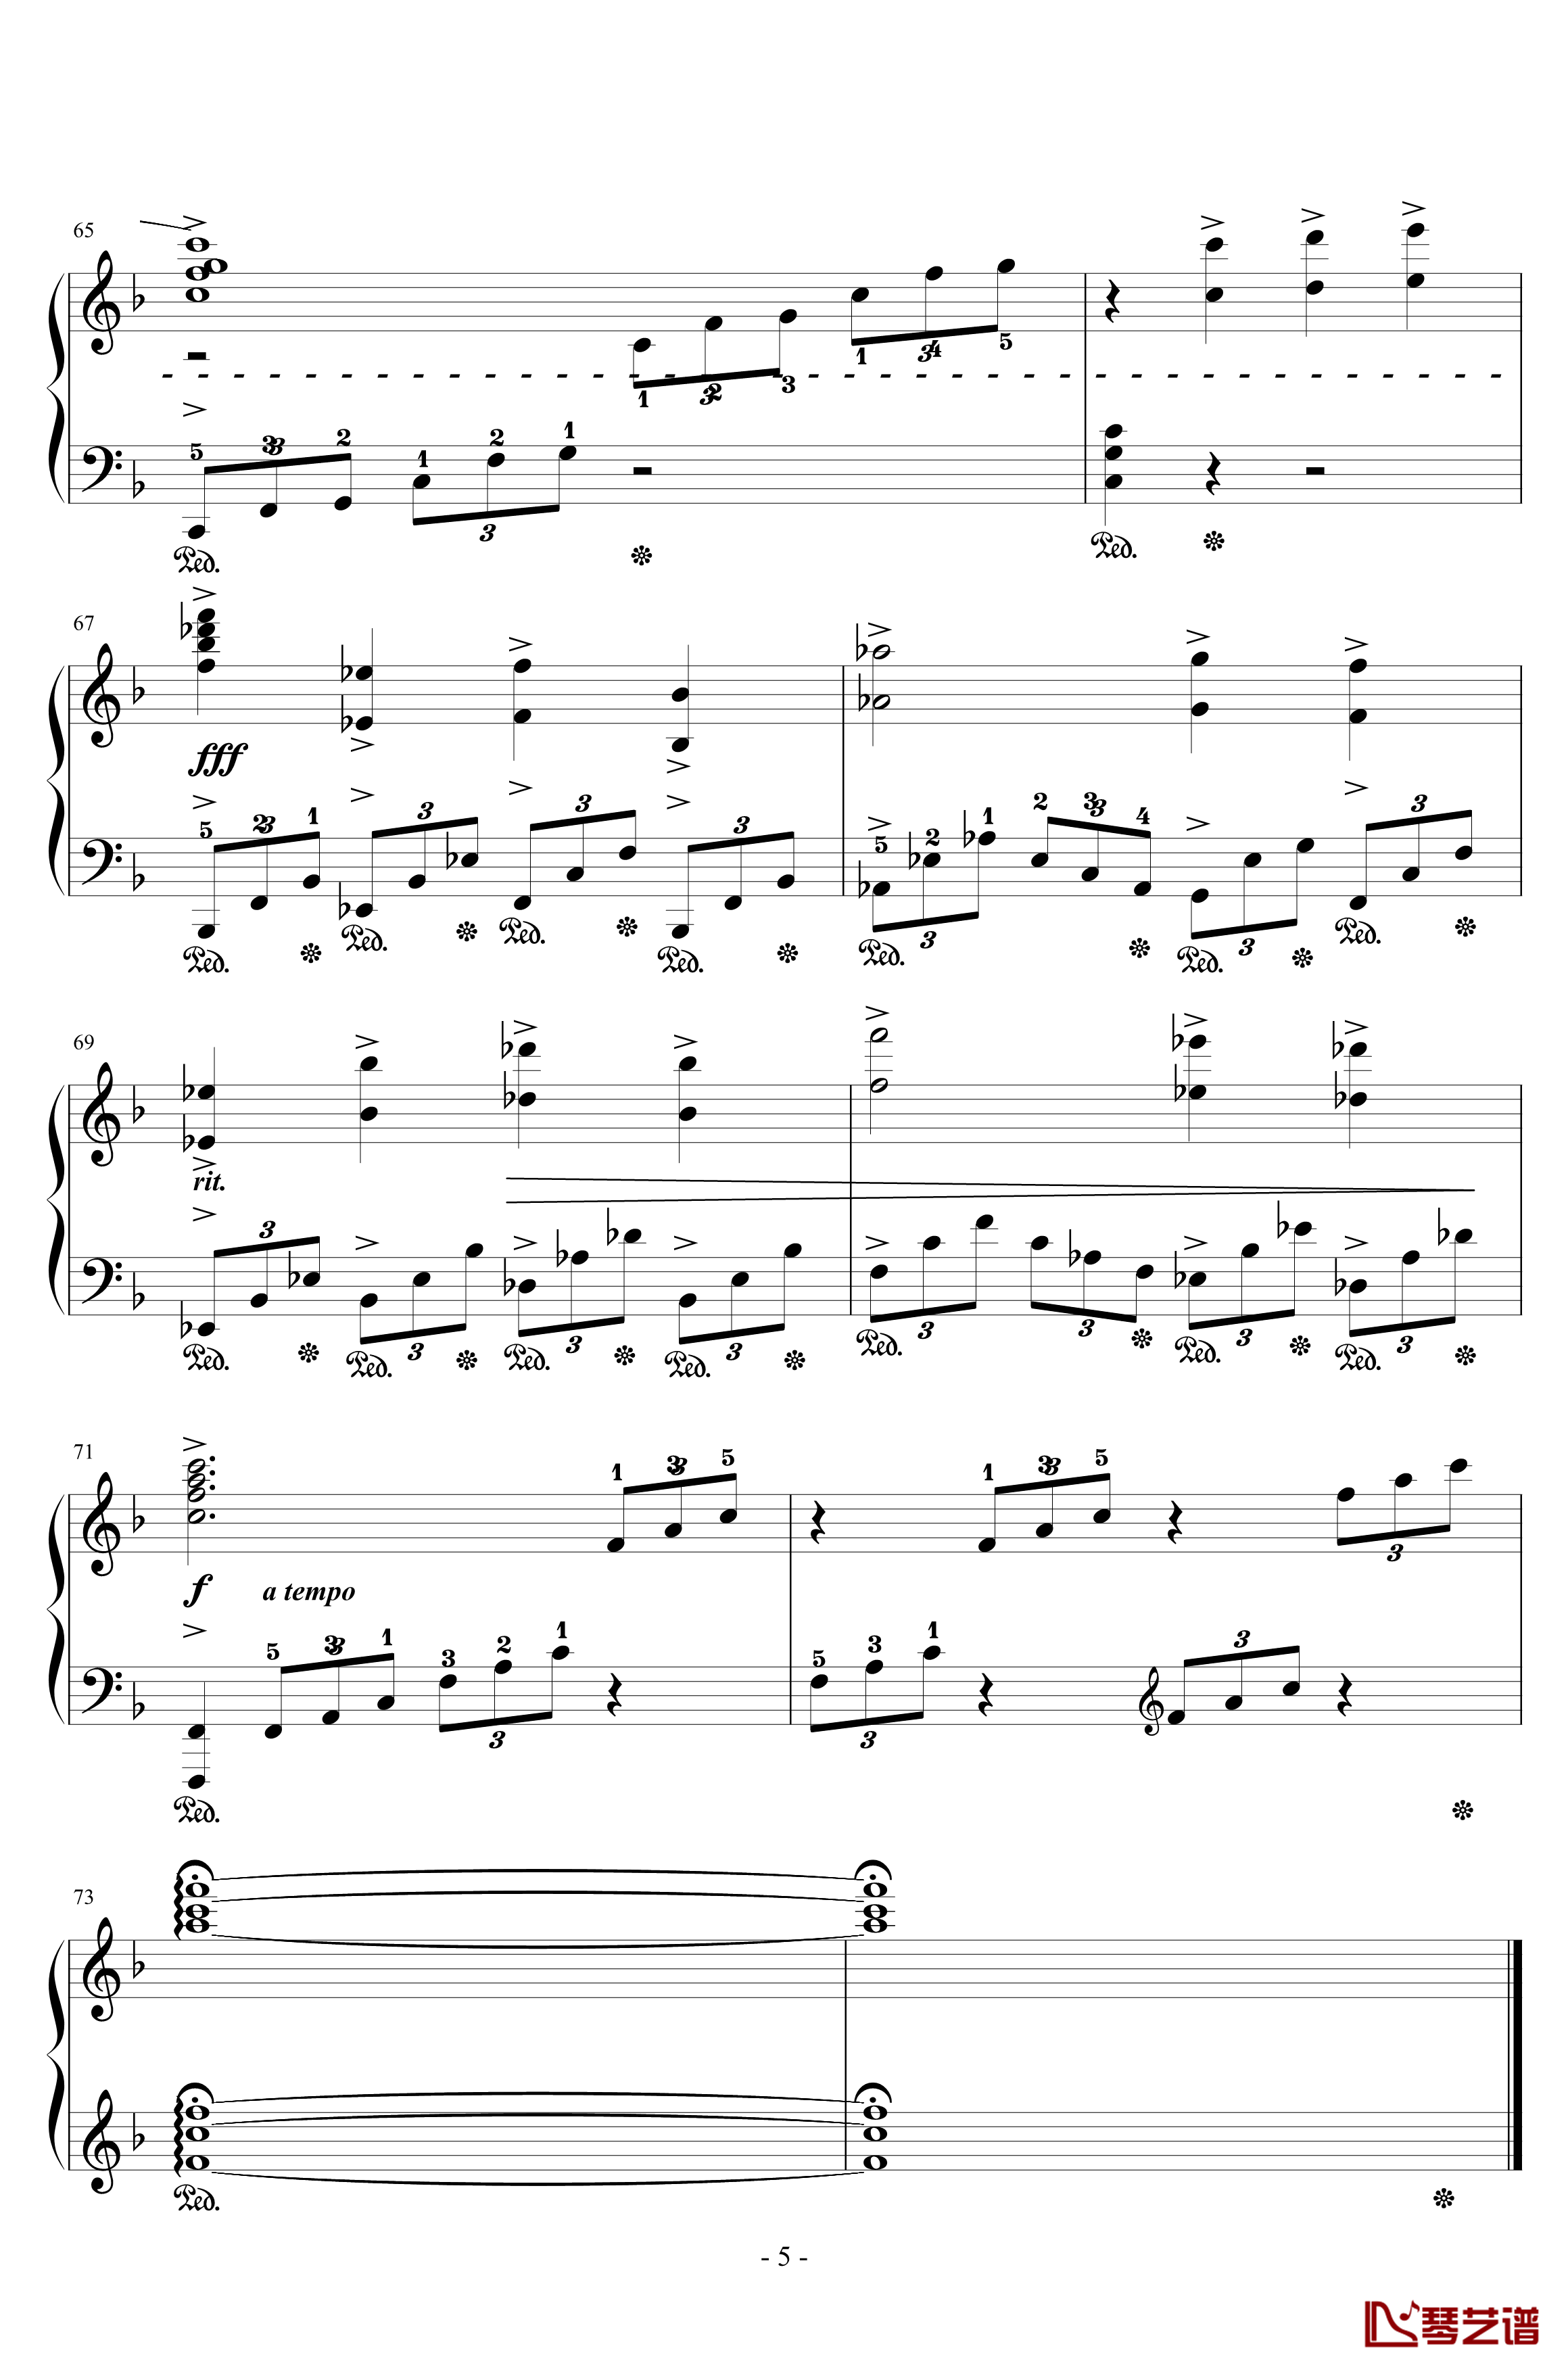 FINAL FANTASY钢琴谱-ENCORE-植松伸夫5